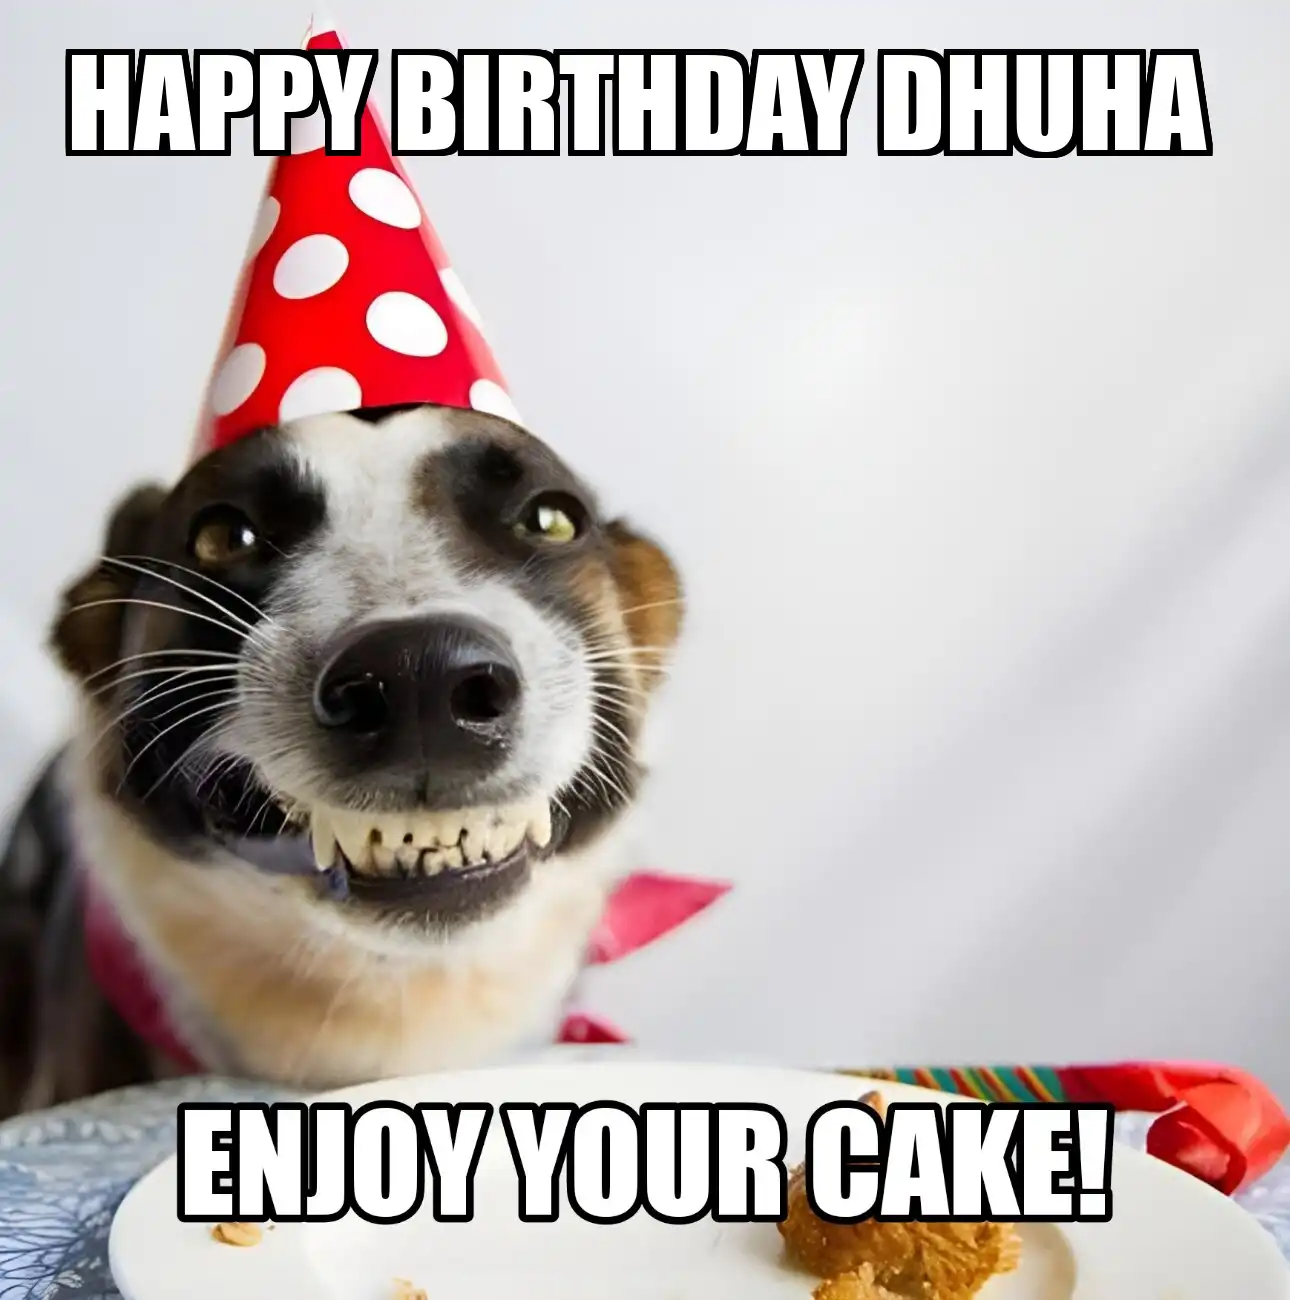 Happy Birthday Dhuha Enjoy Your Cake Dog Meme